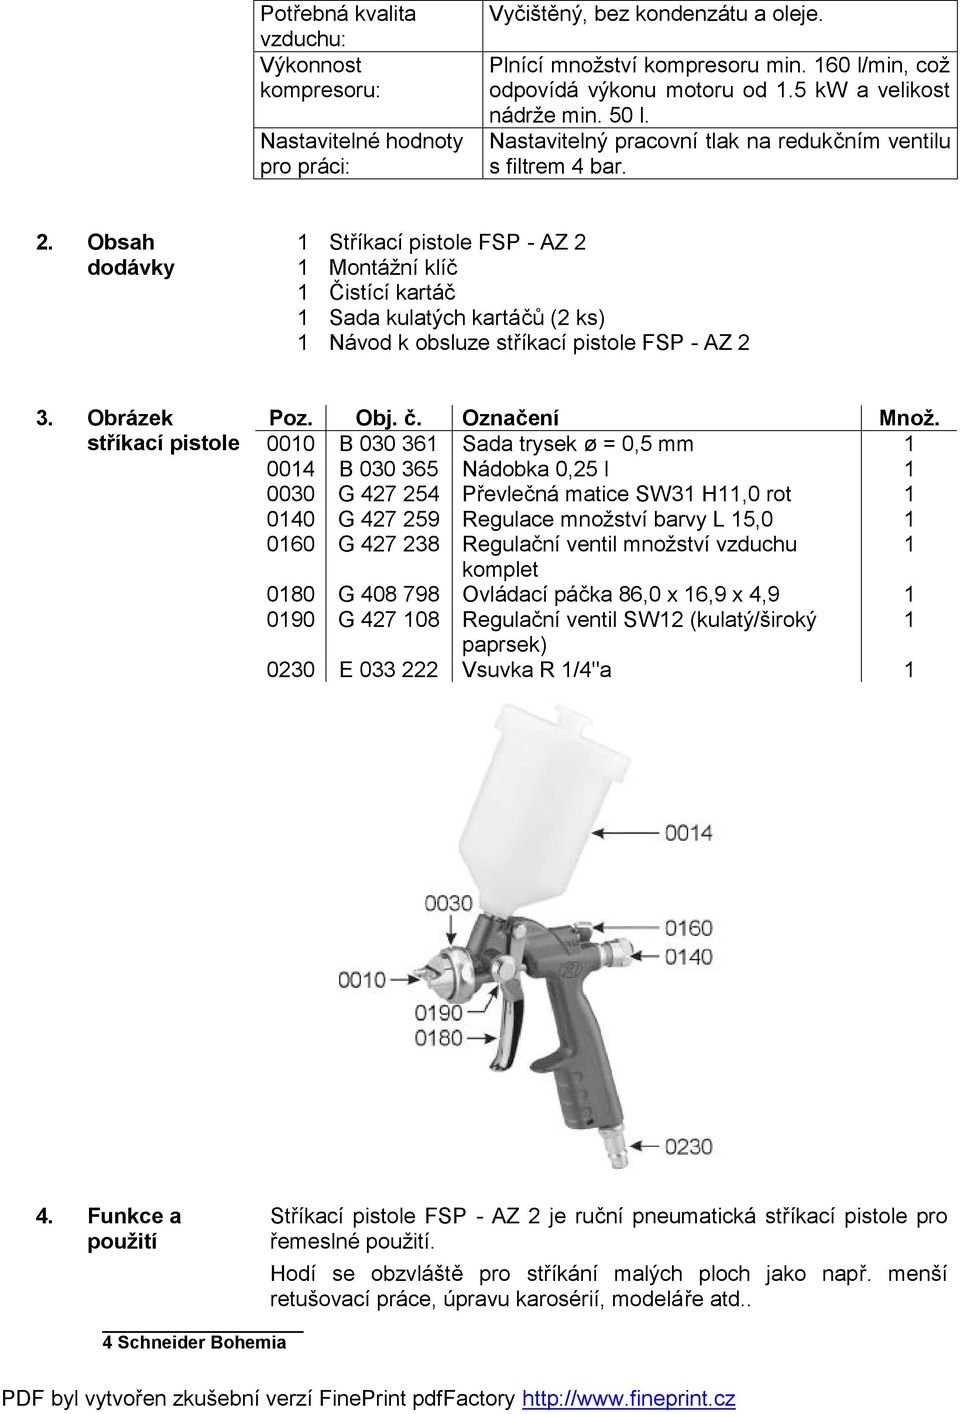 Obsah dodávky 1 Stříkací pistole FSP - AZ 2 1 Montážní klíč 1 Čistící kartáč 1 Sada kulatých kartáčů (2 ks) 1 Návod k obsluze stříkací pistole FSP - AZ 2 3. Obrázek stříkací pistole Poz. Obj. č.